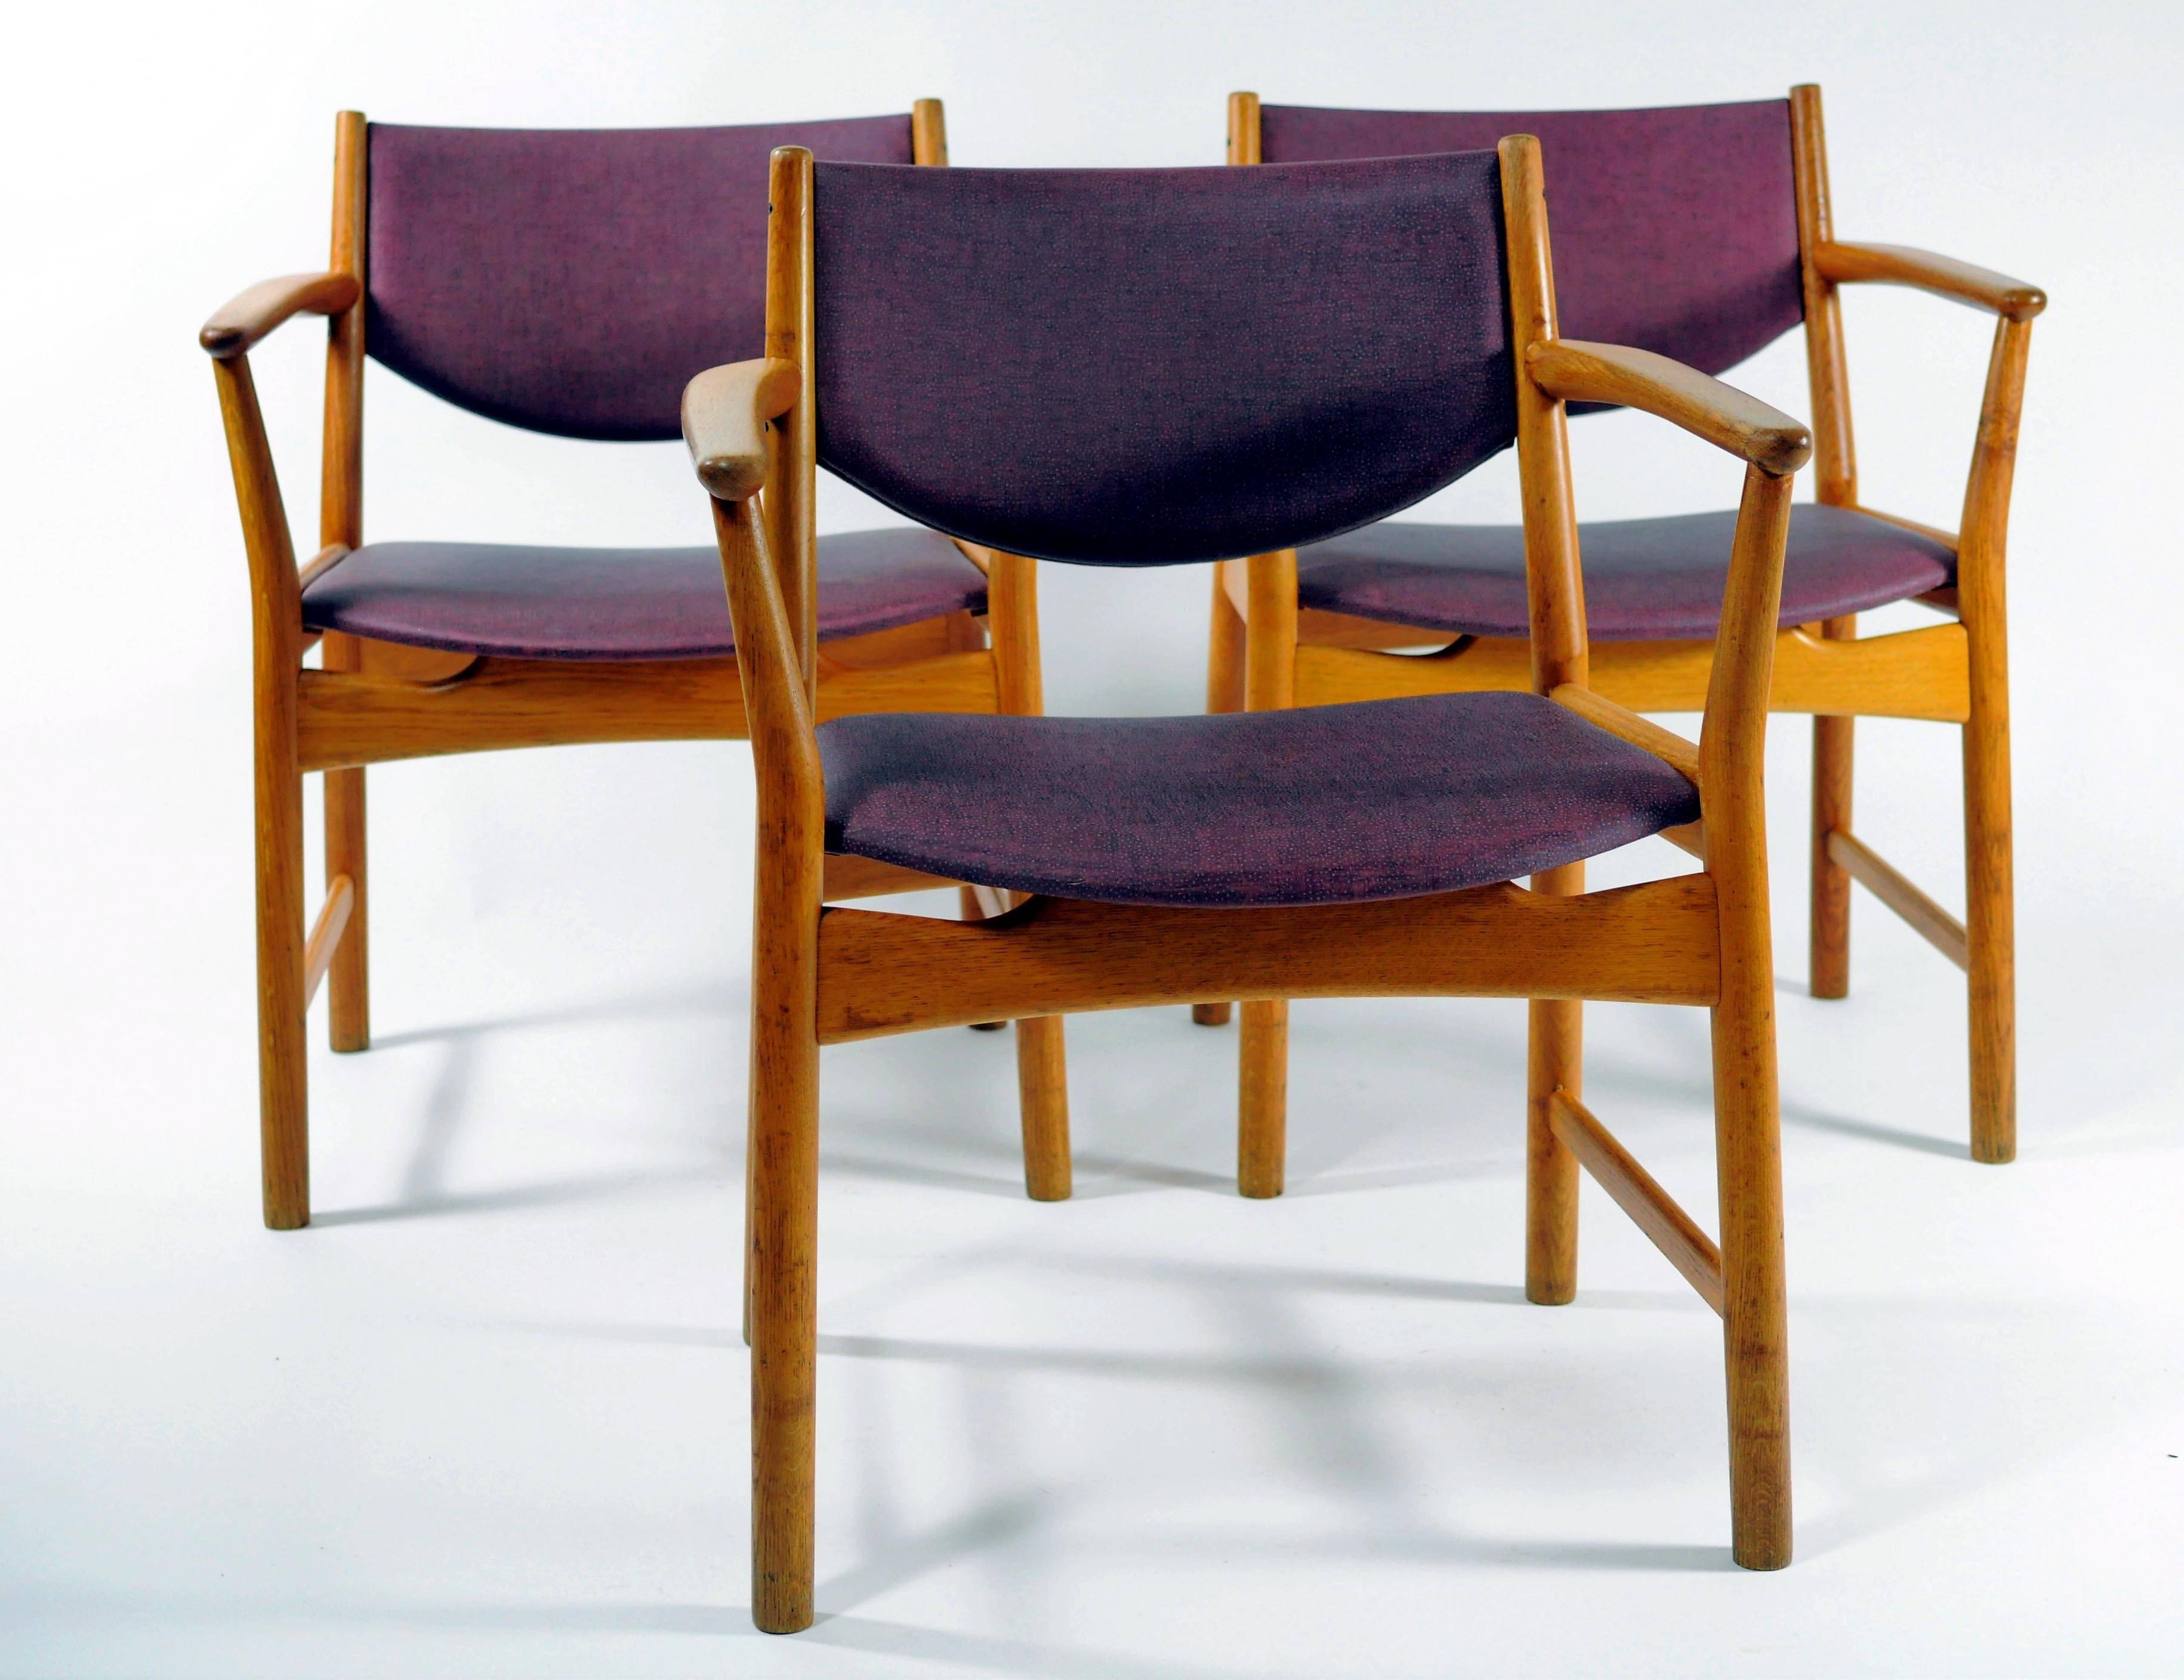 Seltener Satz von drei Sesseln Modell Elena in Eiche, entworfen von Aksel Bender Madsen und Ejnar Larsen, geprägtes Zeichen der Odense Stolefabrik.

Die Stühle haben ein massives Gestell aus Eichenholz mit eleganten Linien, Winkeln und Kurven, die